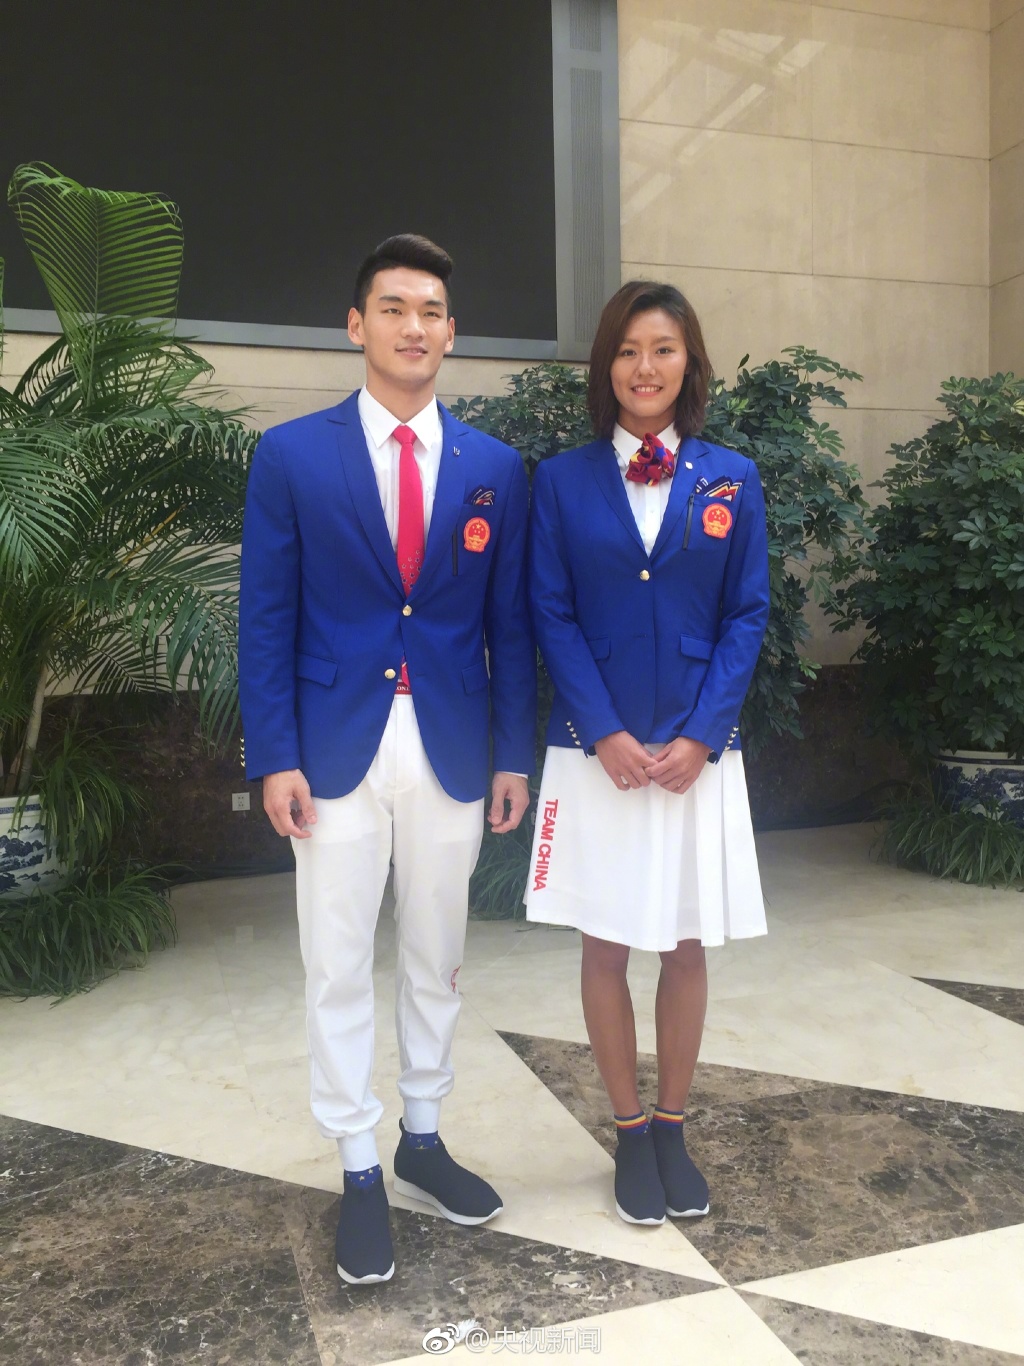 印尼雅加达亚运会中国代表团礼服发布 告别番